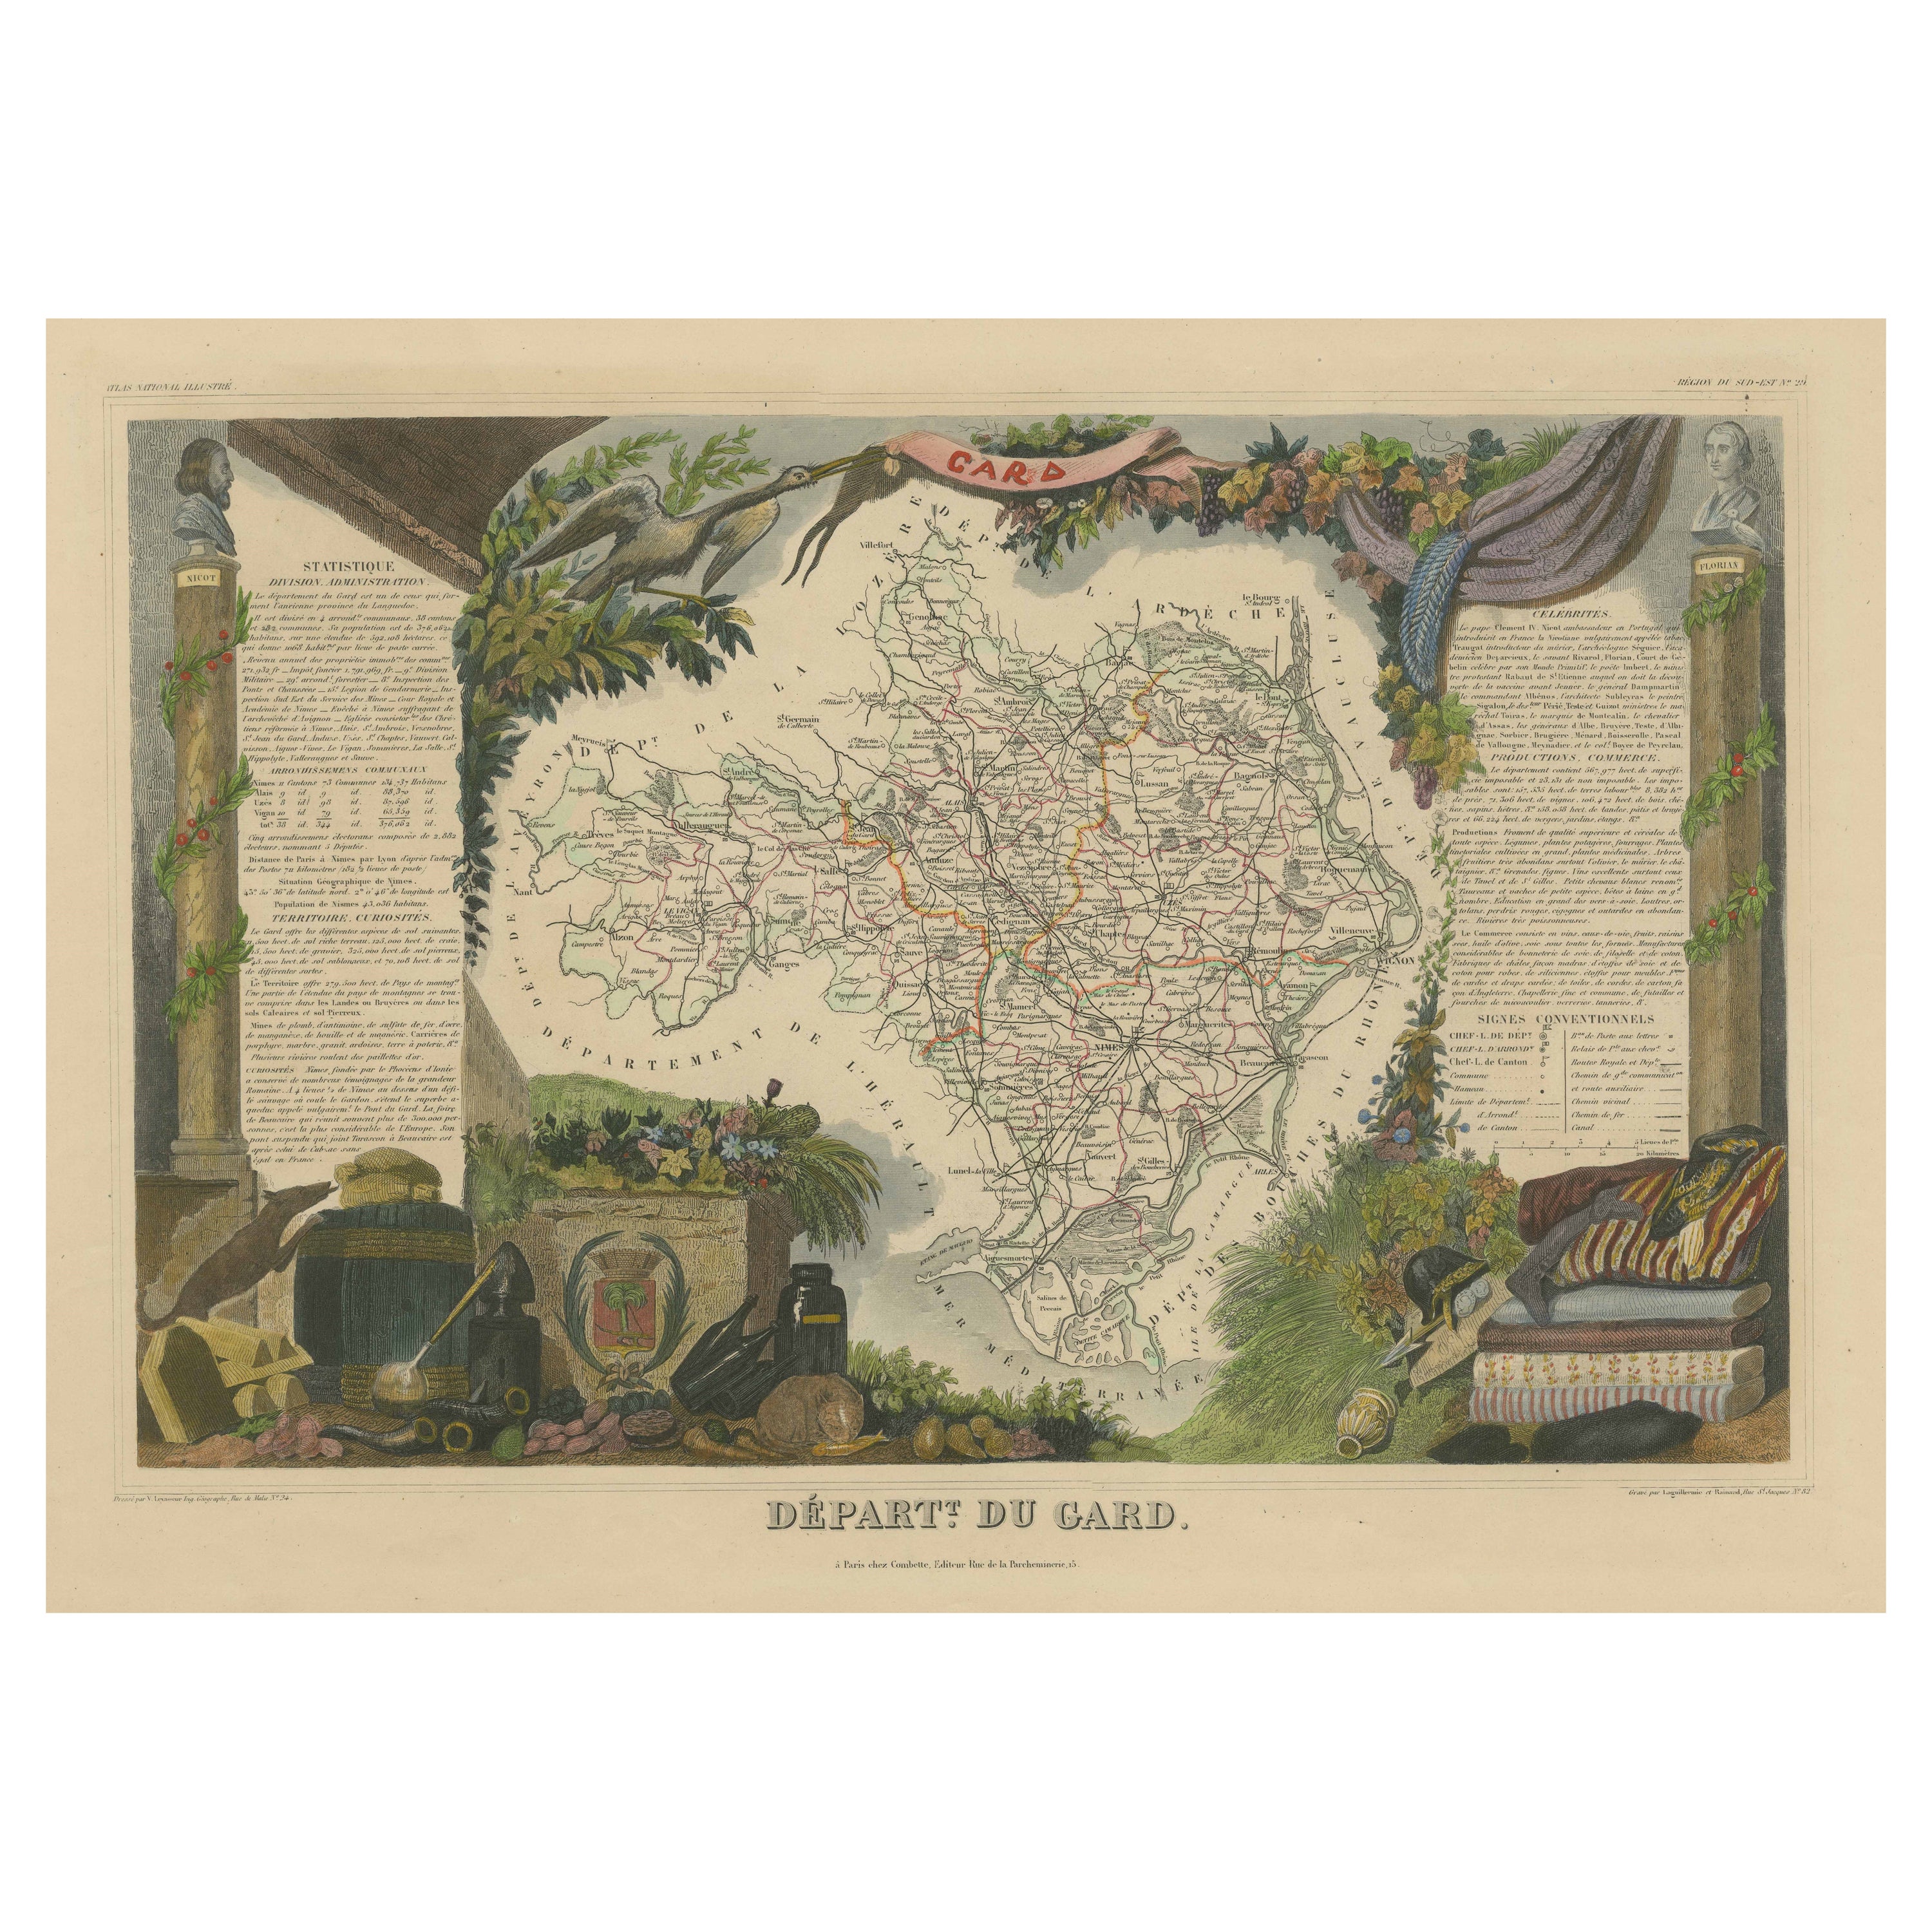 Mapa Antiguo Coloreado a Mano del Departamento de Gard, Francia en venta